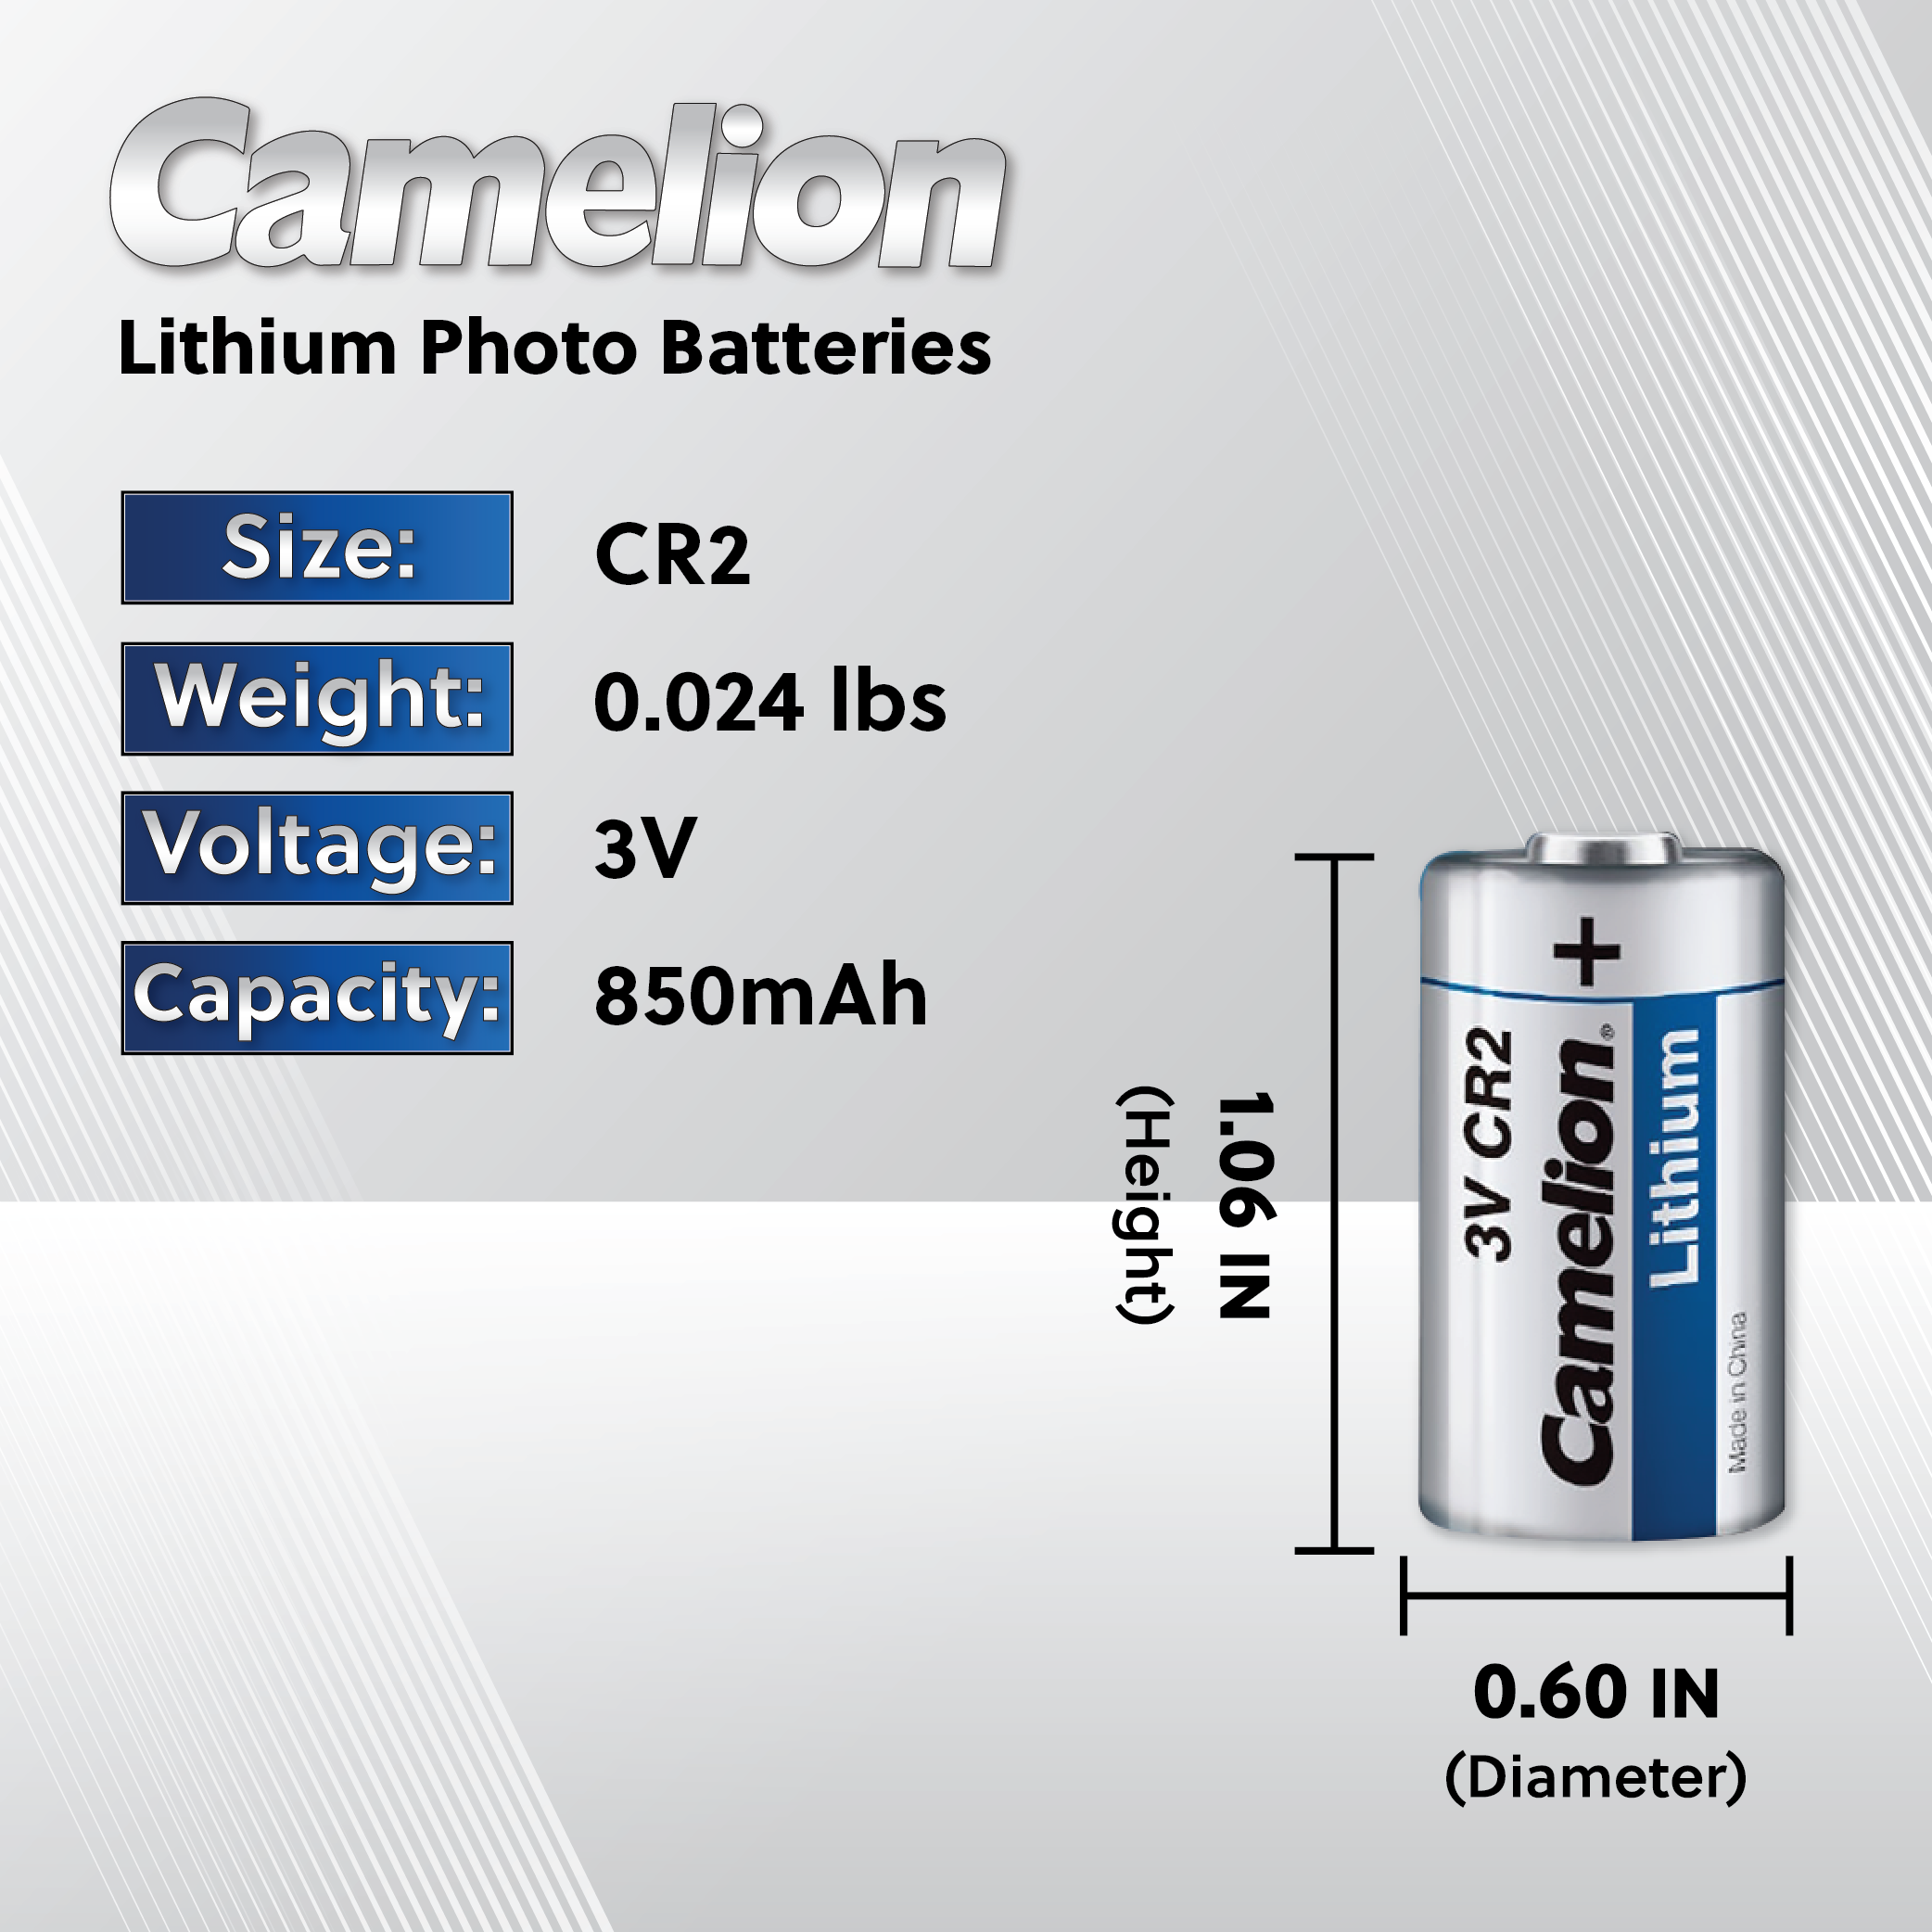 Camelion CR2 3 Volt pile photo au lithium 850 mAh